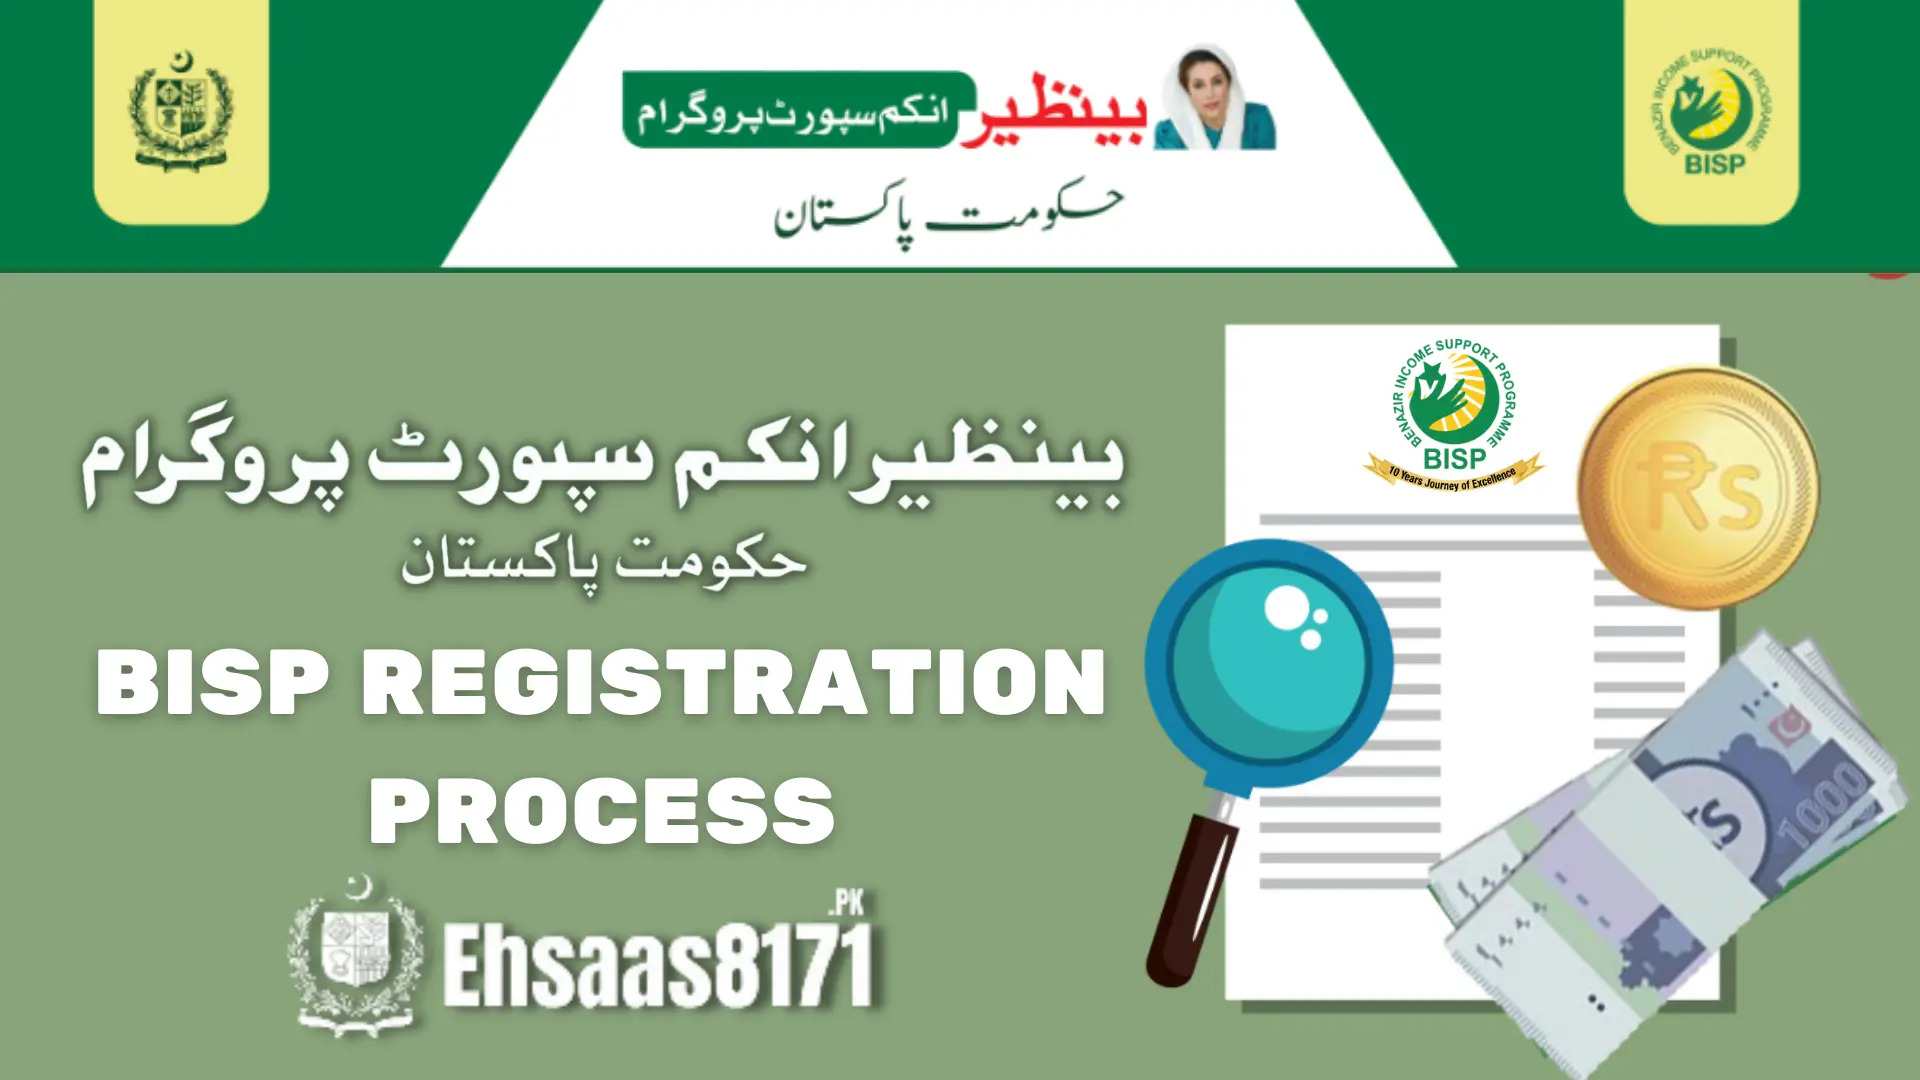 BISP Registration Process